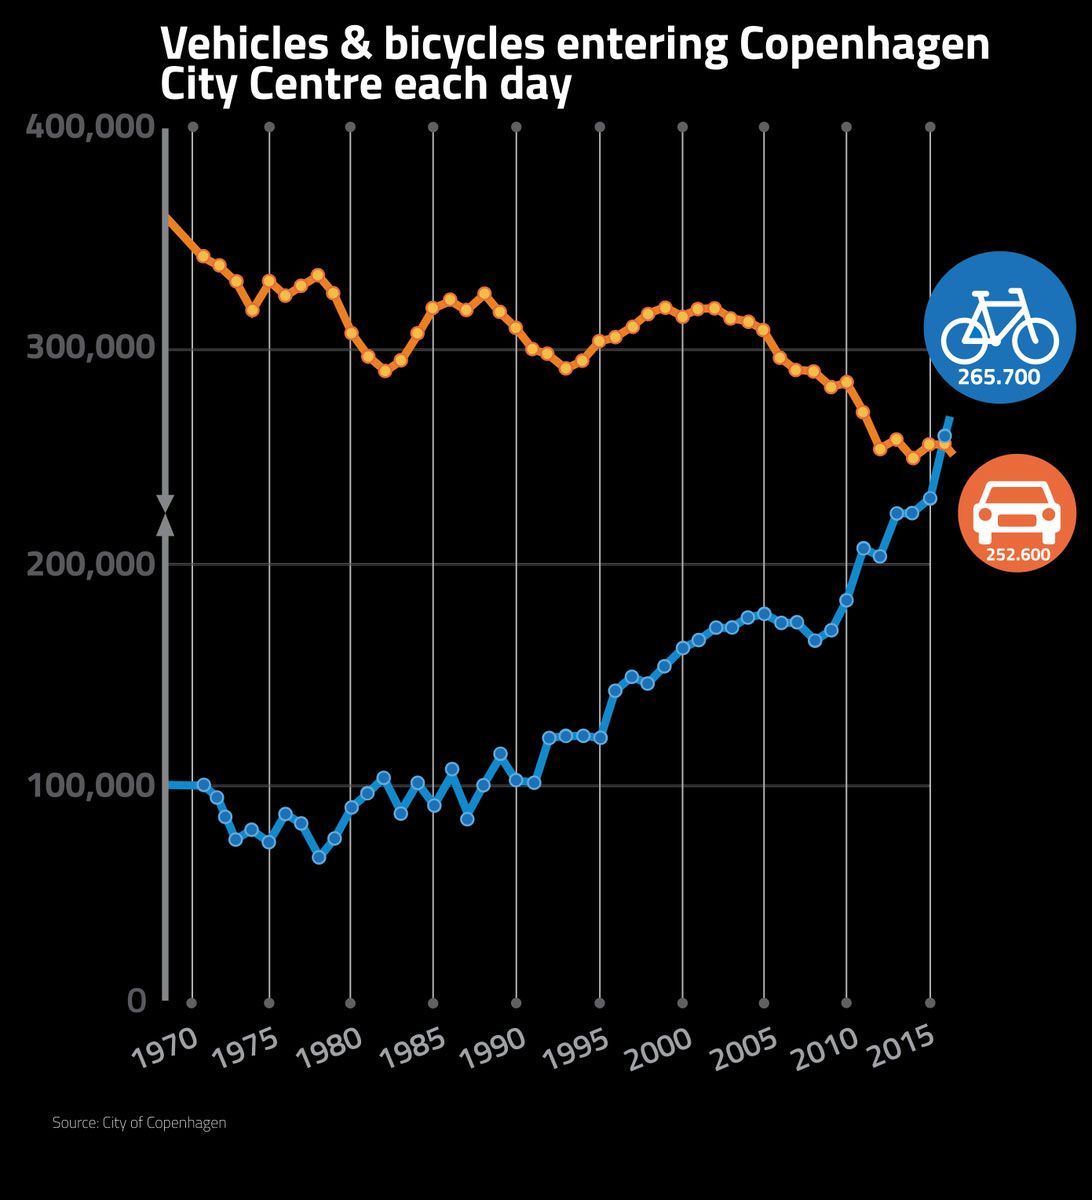 Vernetzung als Basis der Sharing Economy ist ein Faktor ür den Fahrrad-Boom in Kopenhagen